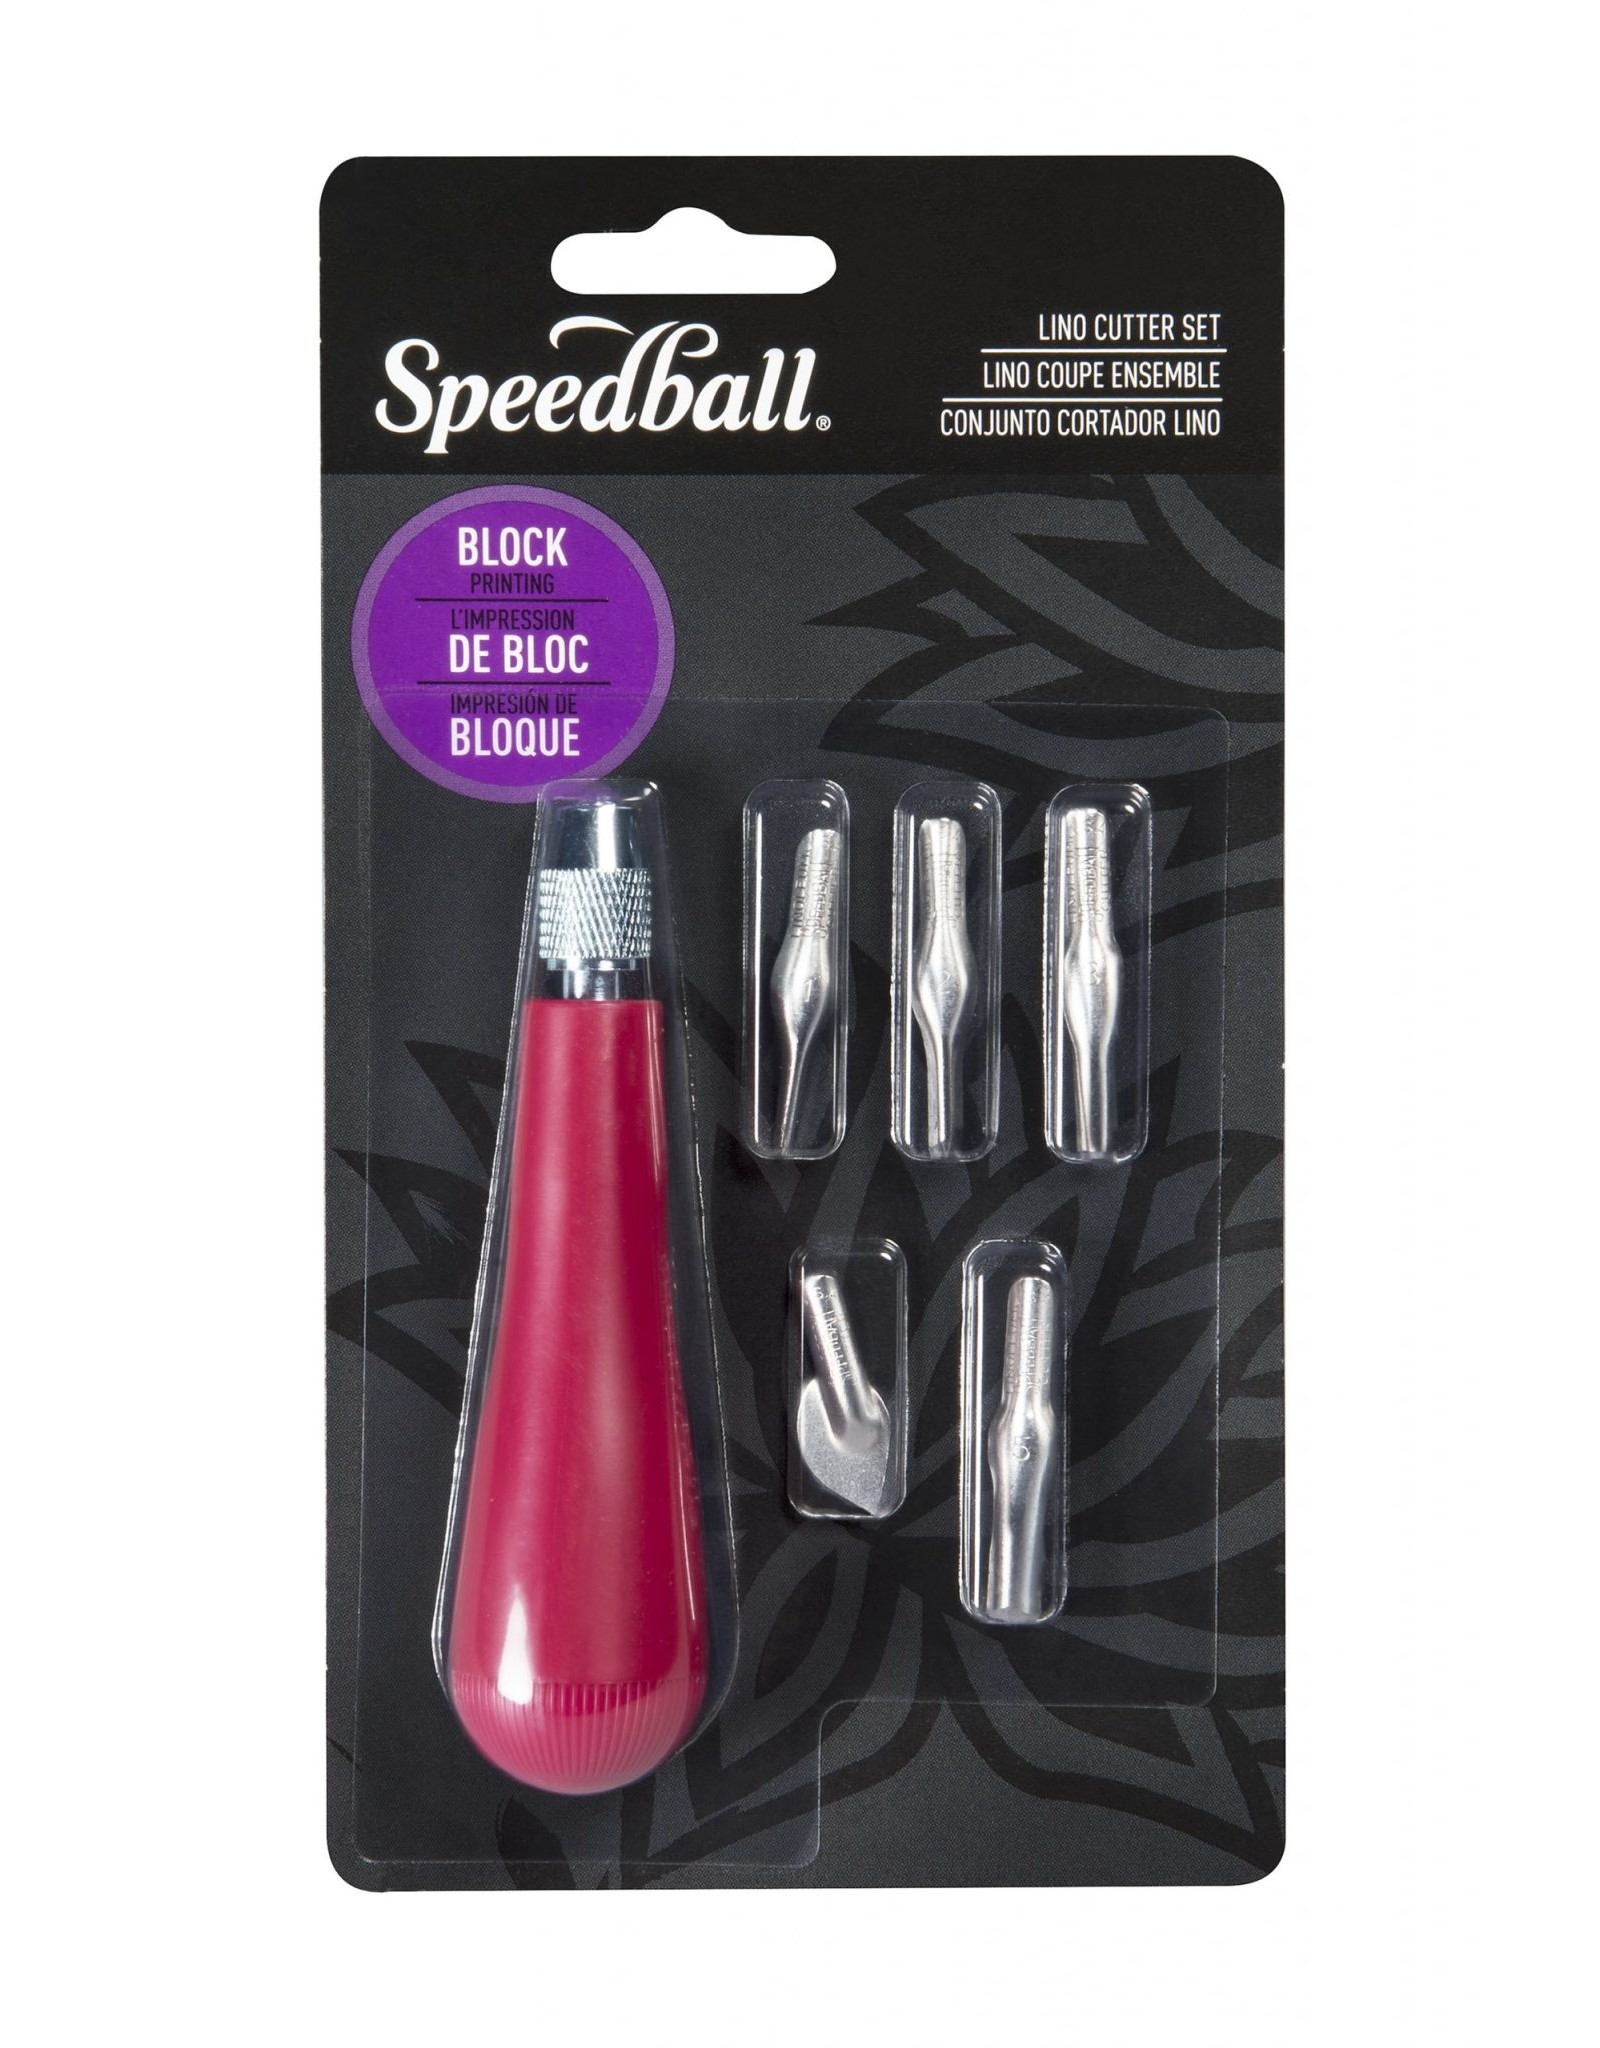 SPEEDBALL ART PRODUCTS Speedball Lino Cutter Assortment #1